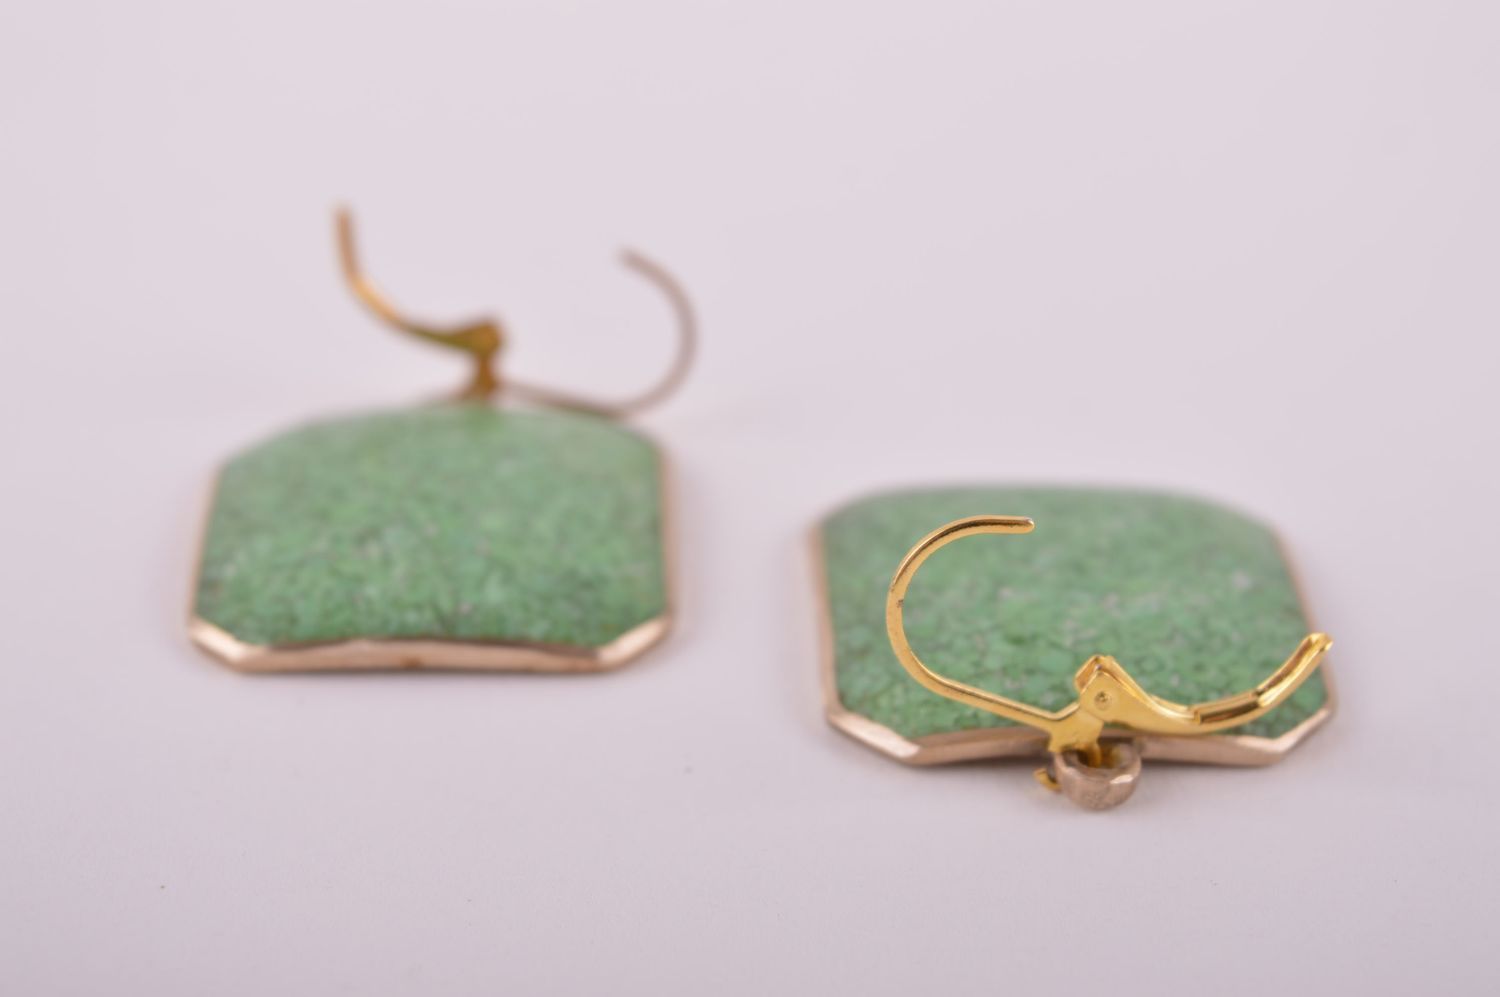 Украшение из латуни handmade серьги из натуральных камней модные серьги зеленые фото 5